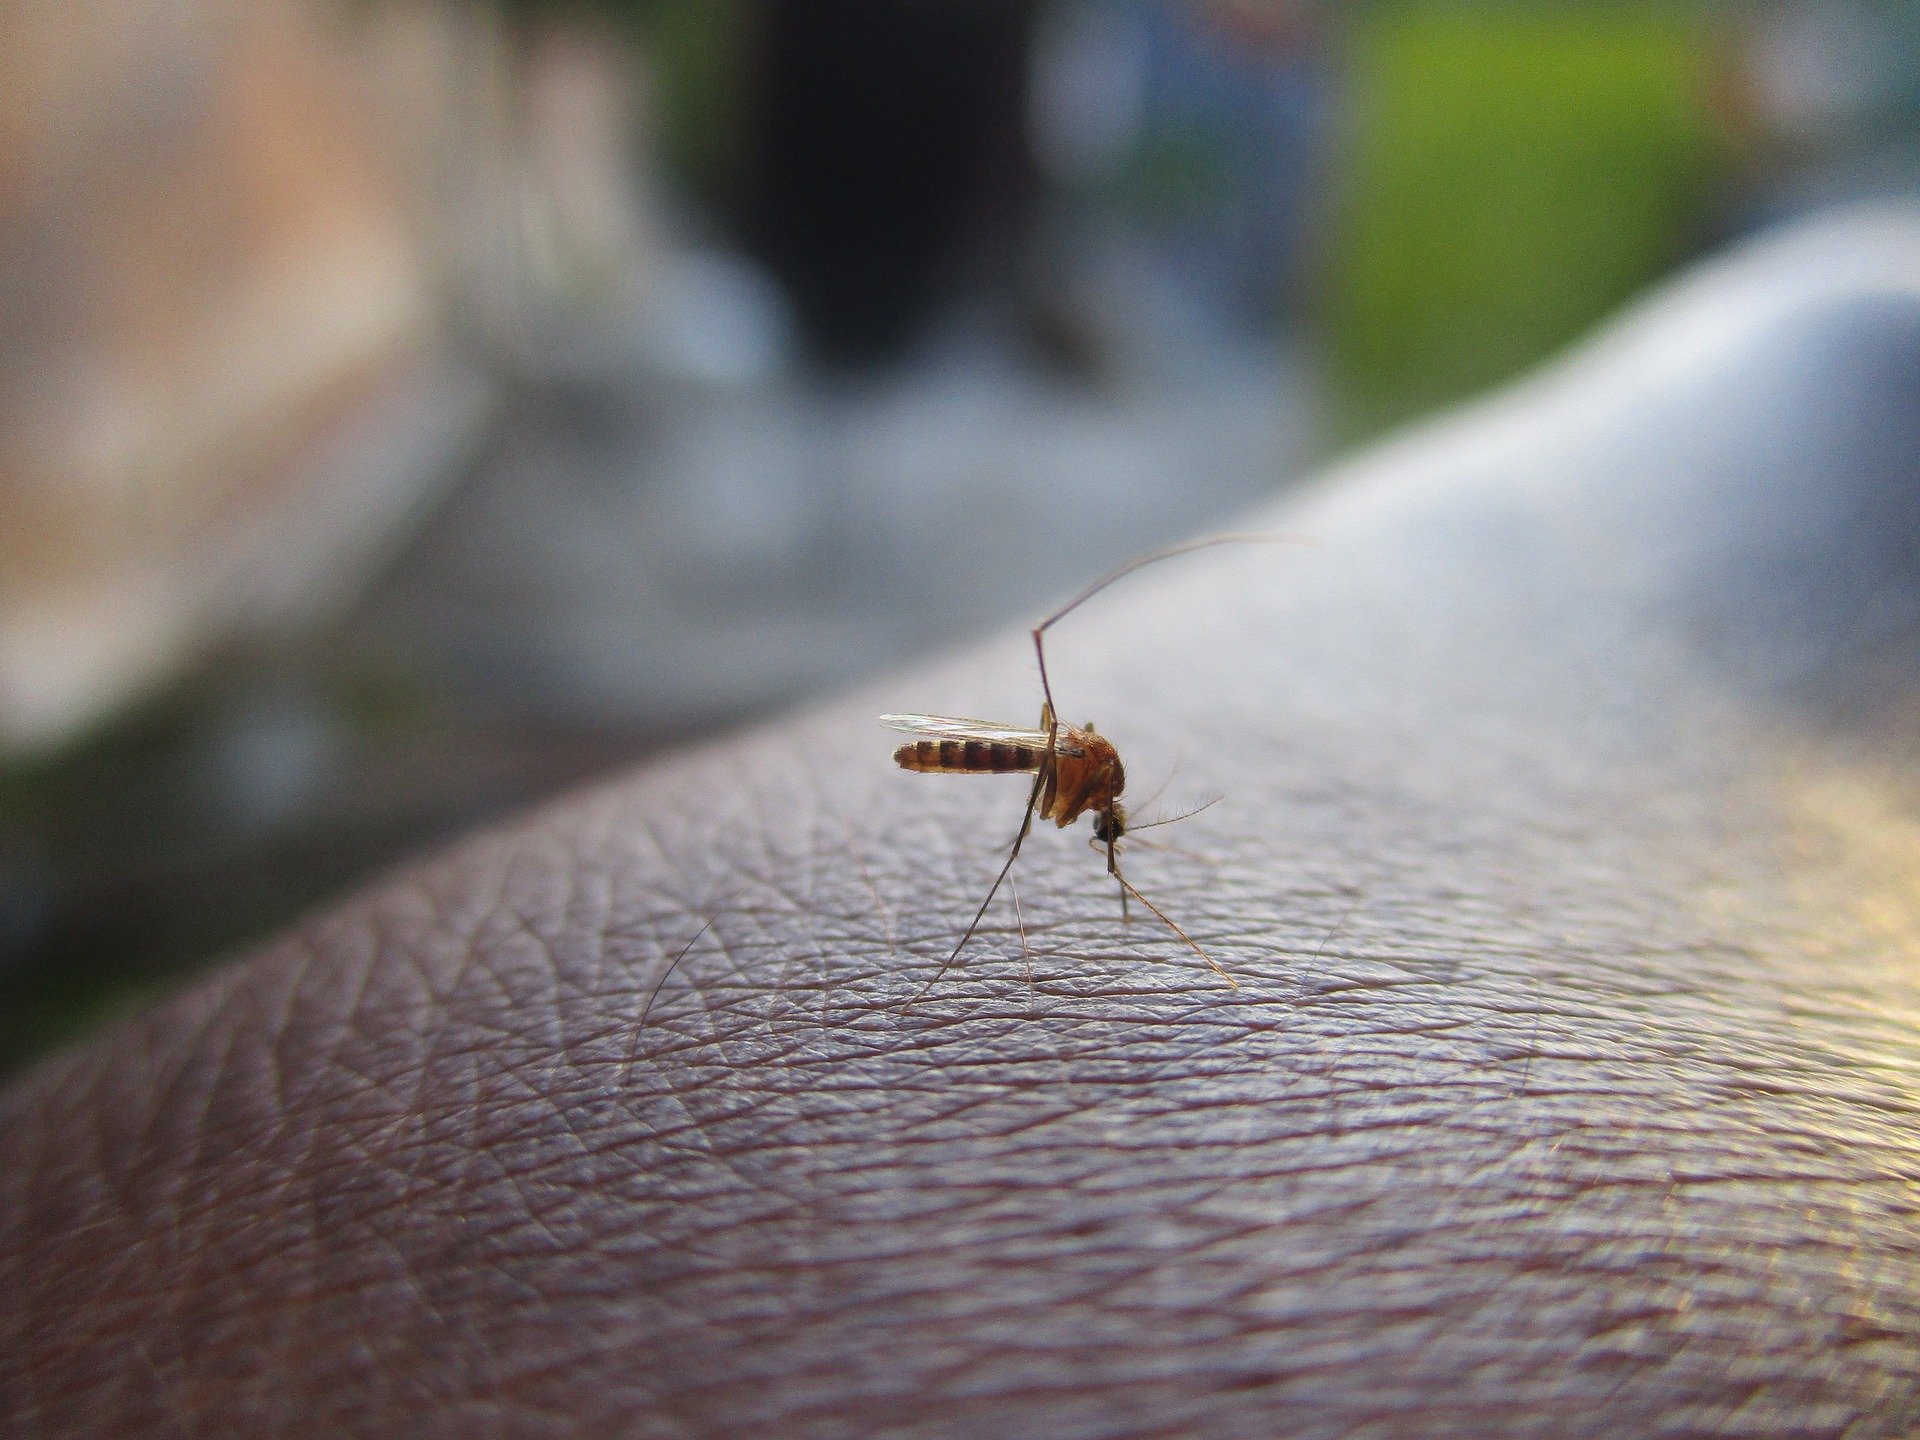 Бразильская однократная вакцина против лихорадки денге может помочь переломить ситуацию в борьбе с лихорадкой